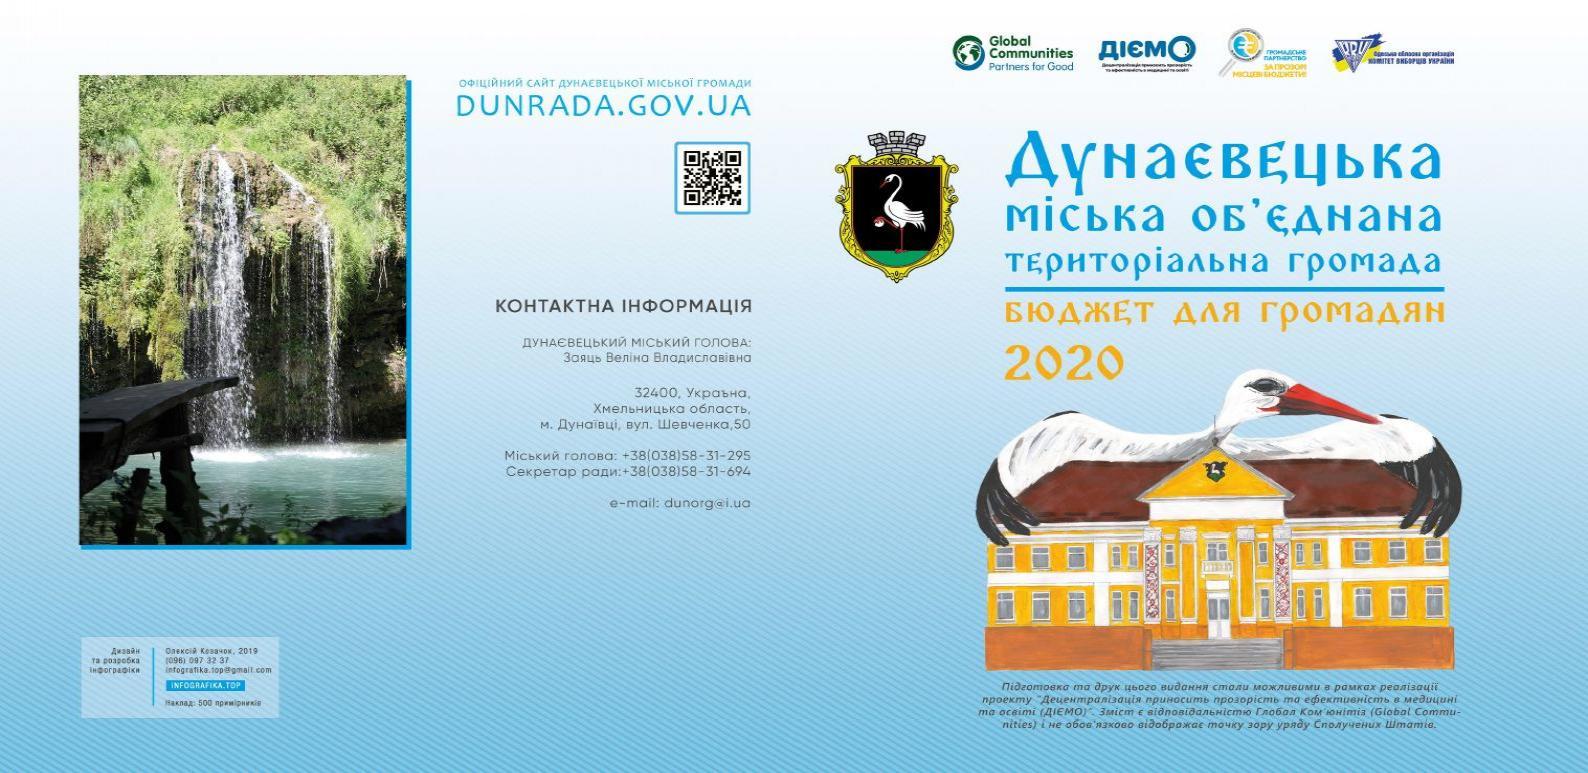 http://dunrada.gov.ua/uploadfile/archive_article/2020/09/04/2020-09-04_8469/images/images-83245.jpg